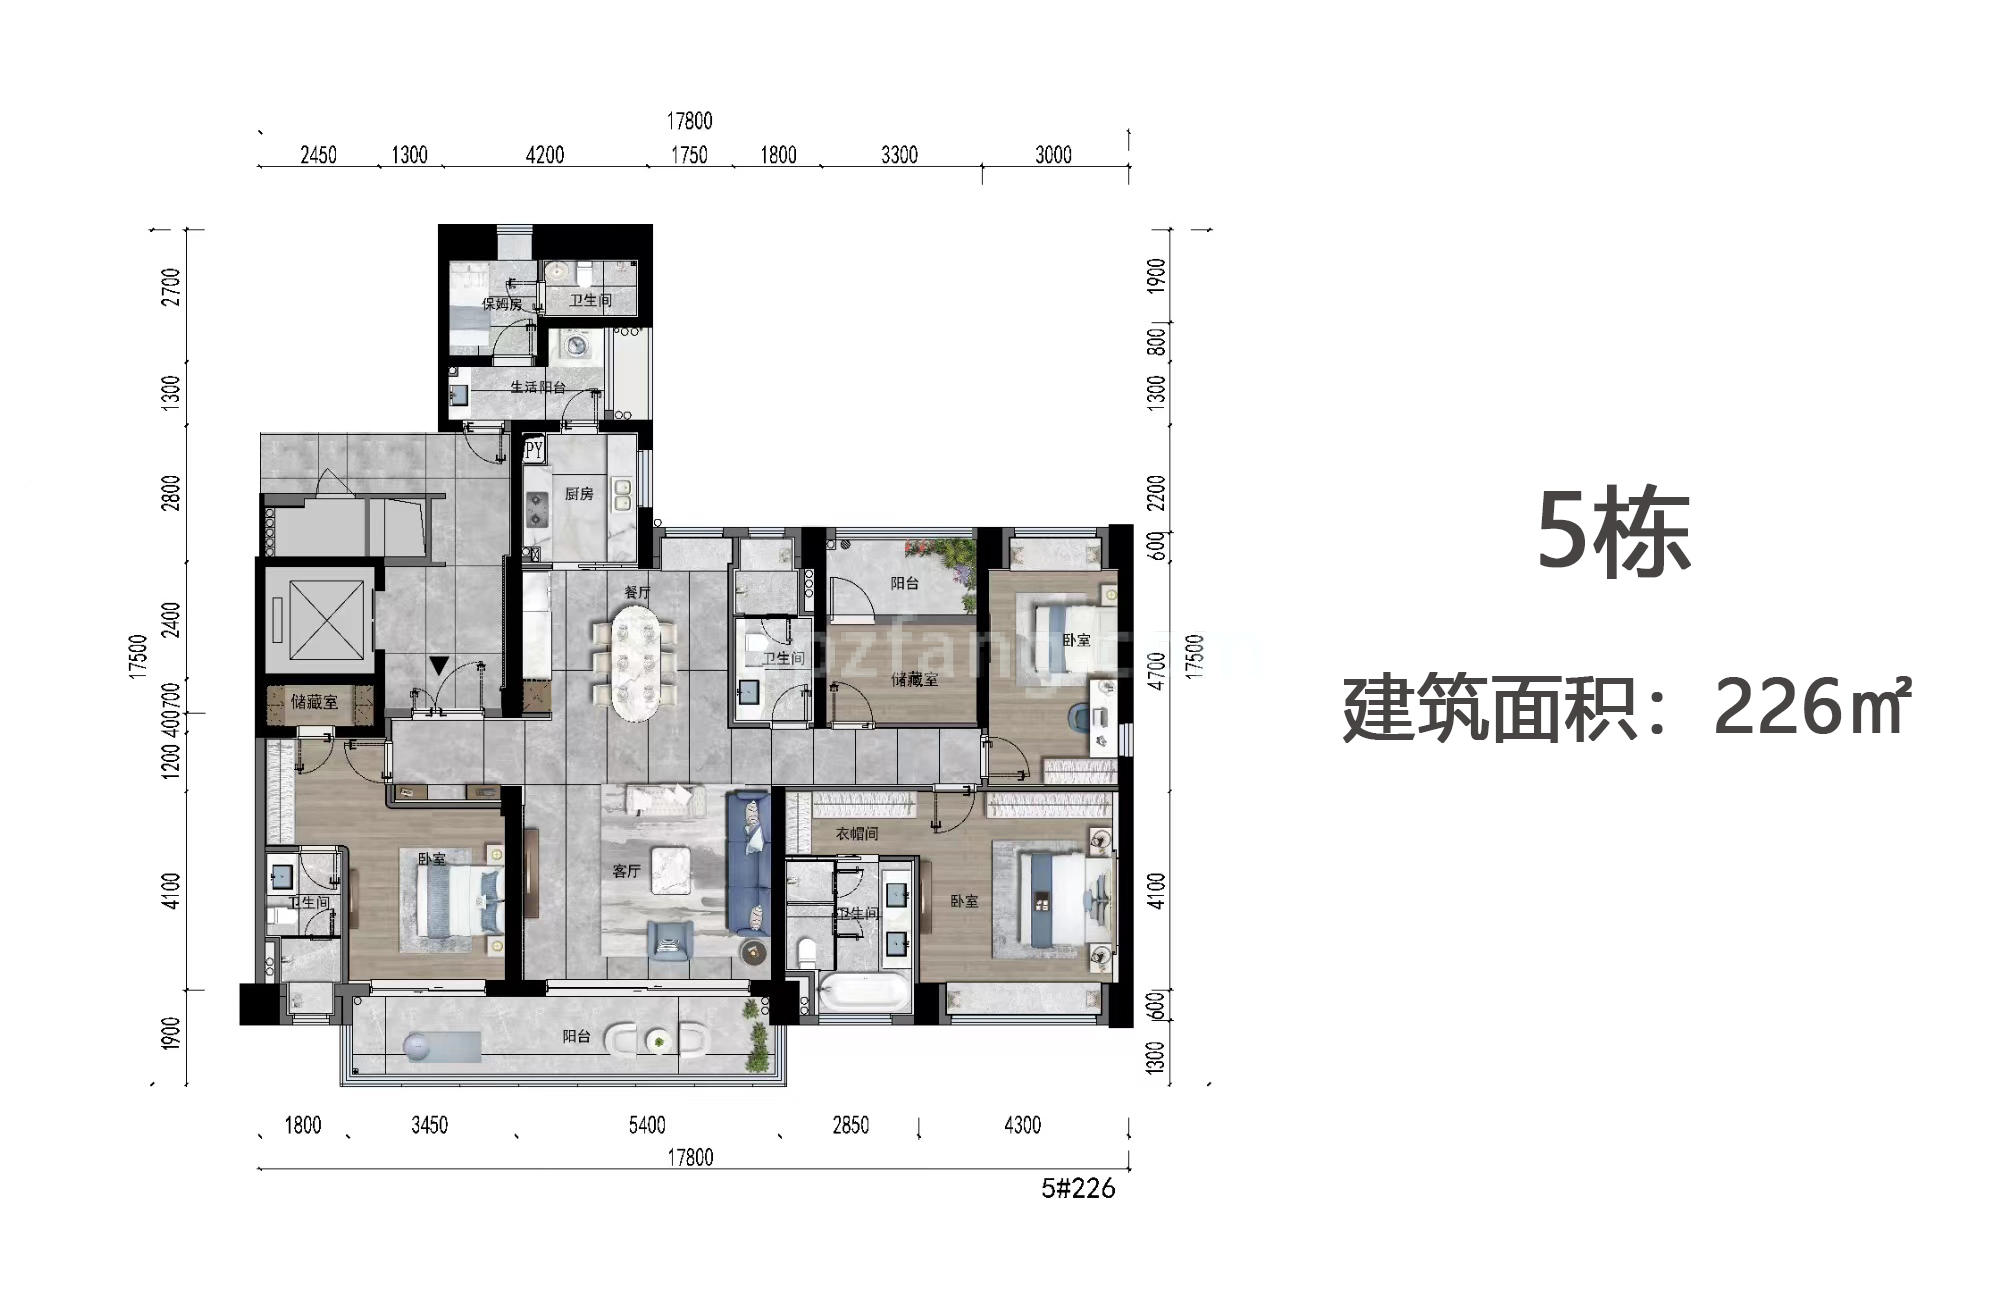 高层 5栋户型 5房2厅3卫+保姆房 建筑面积226㎡